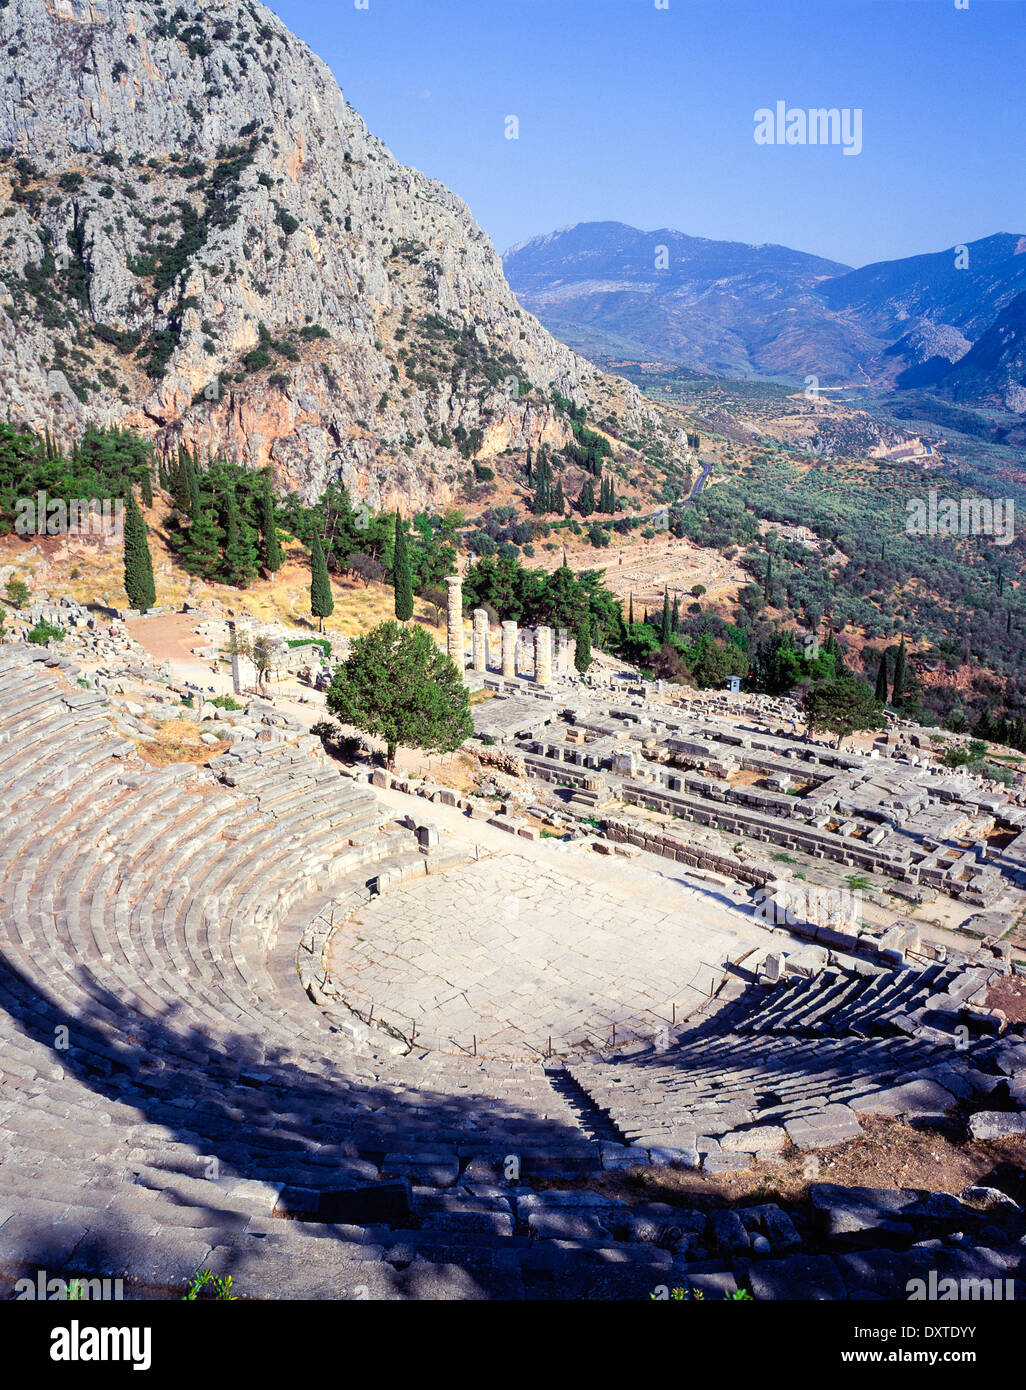 the Temple of Apollo and theatre ruins at ancient Delphi Sterea Ellada Greece Stock Photo